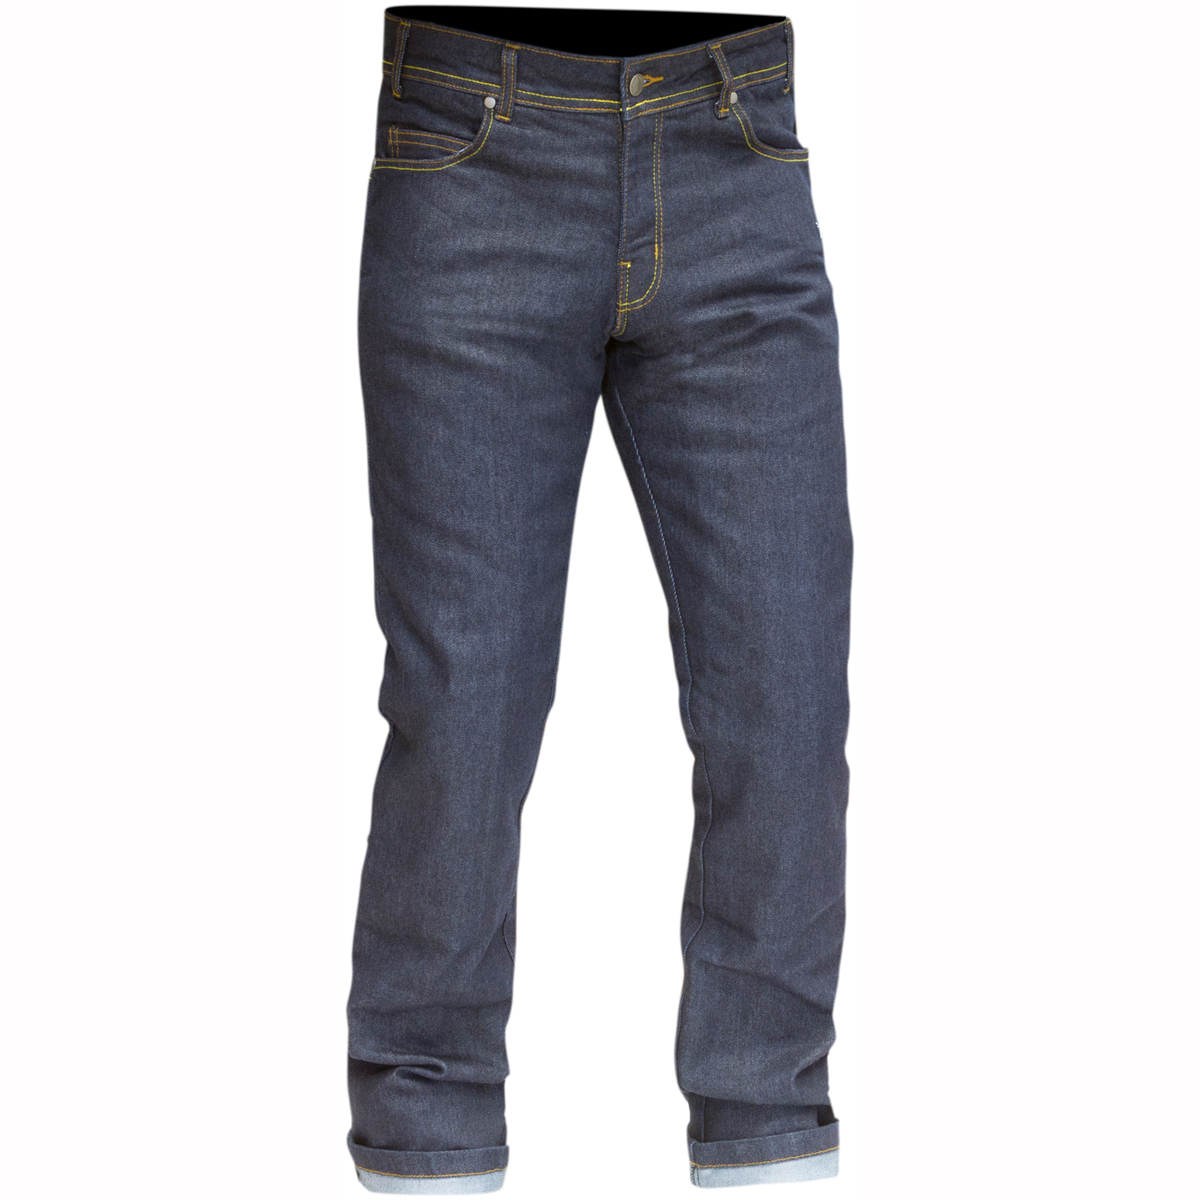 levis kevlar jeans - zetaphi 